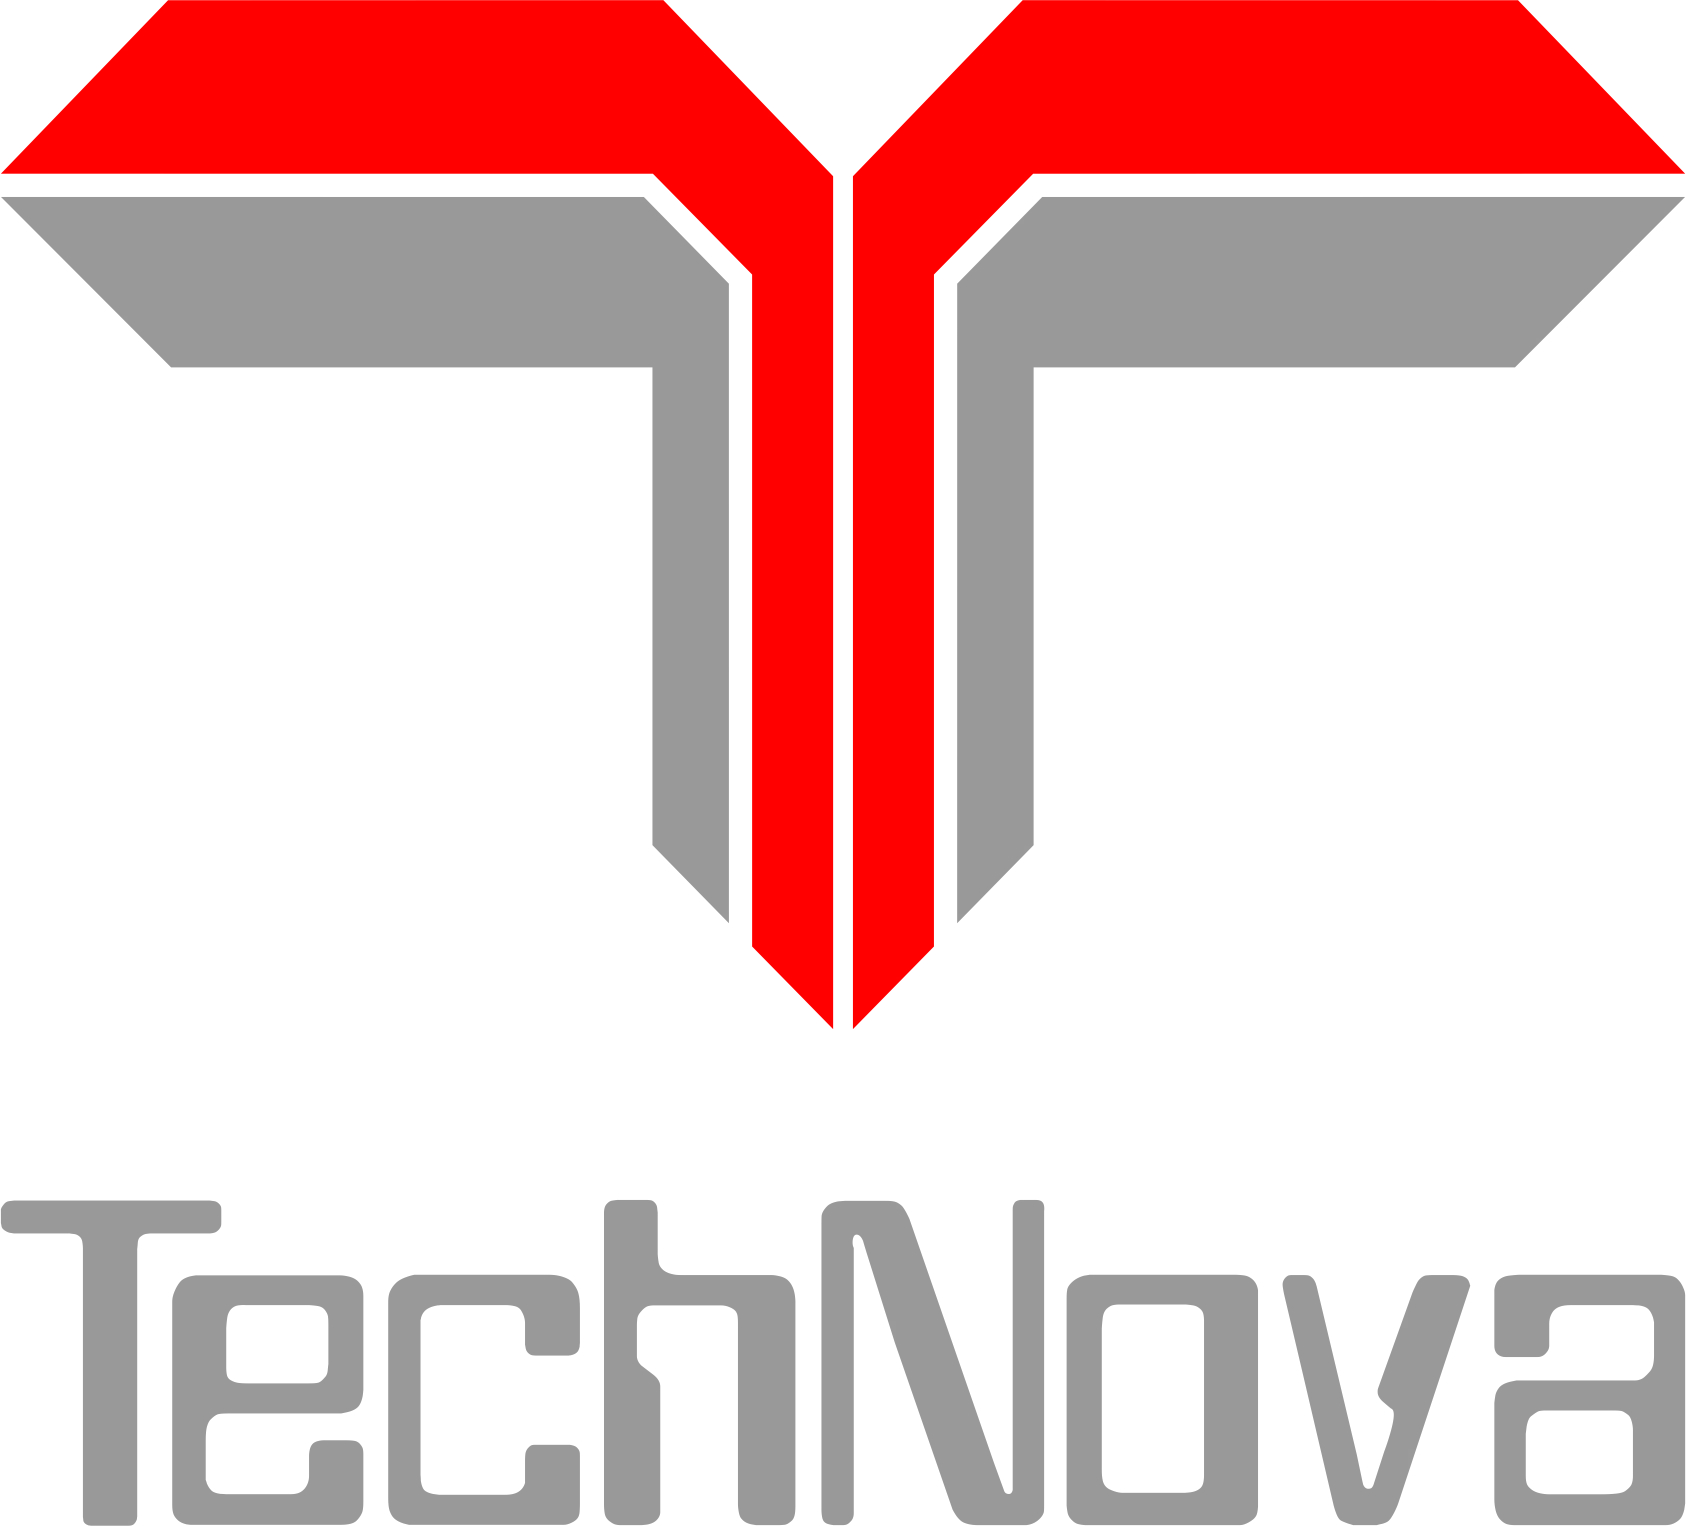 M/s. TechNova Imaging Systems (P) Ltd